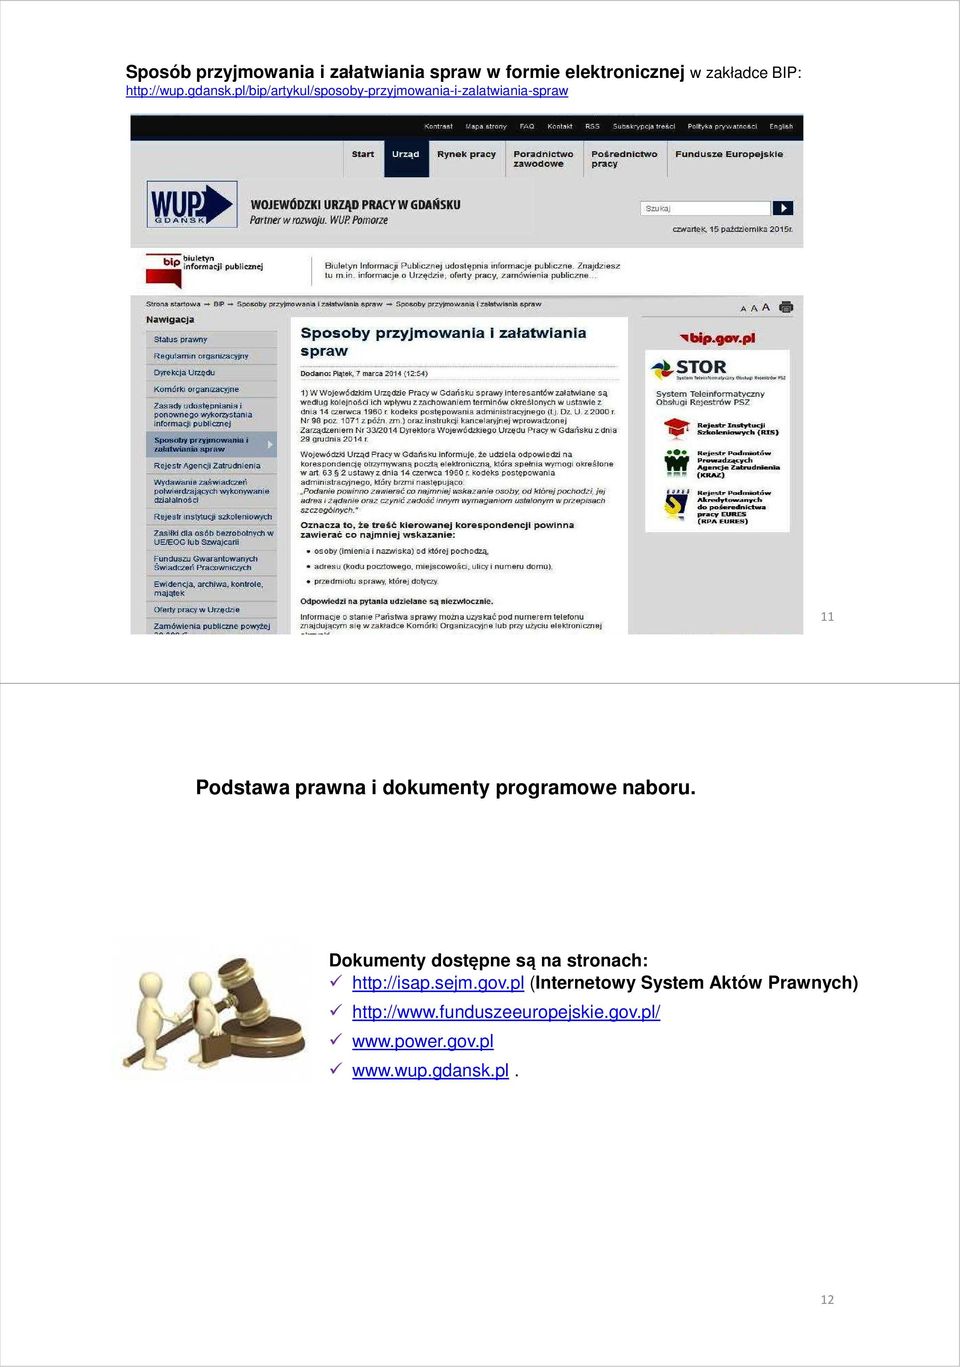 pl/bip/artykul/sposoby-przyjmowania-i-zalatwiania-spraw 11 Podstawa prawna i dokumenty